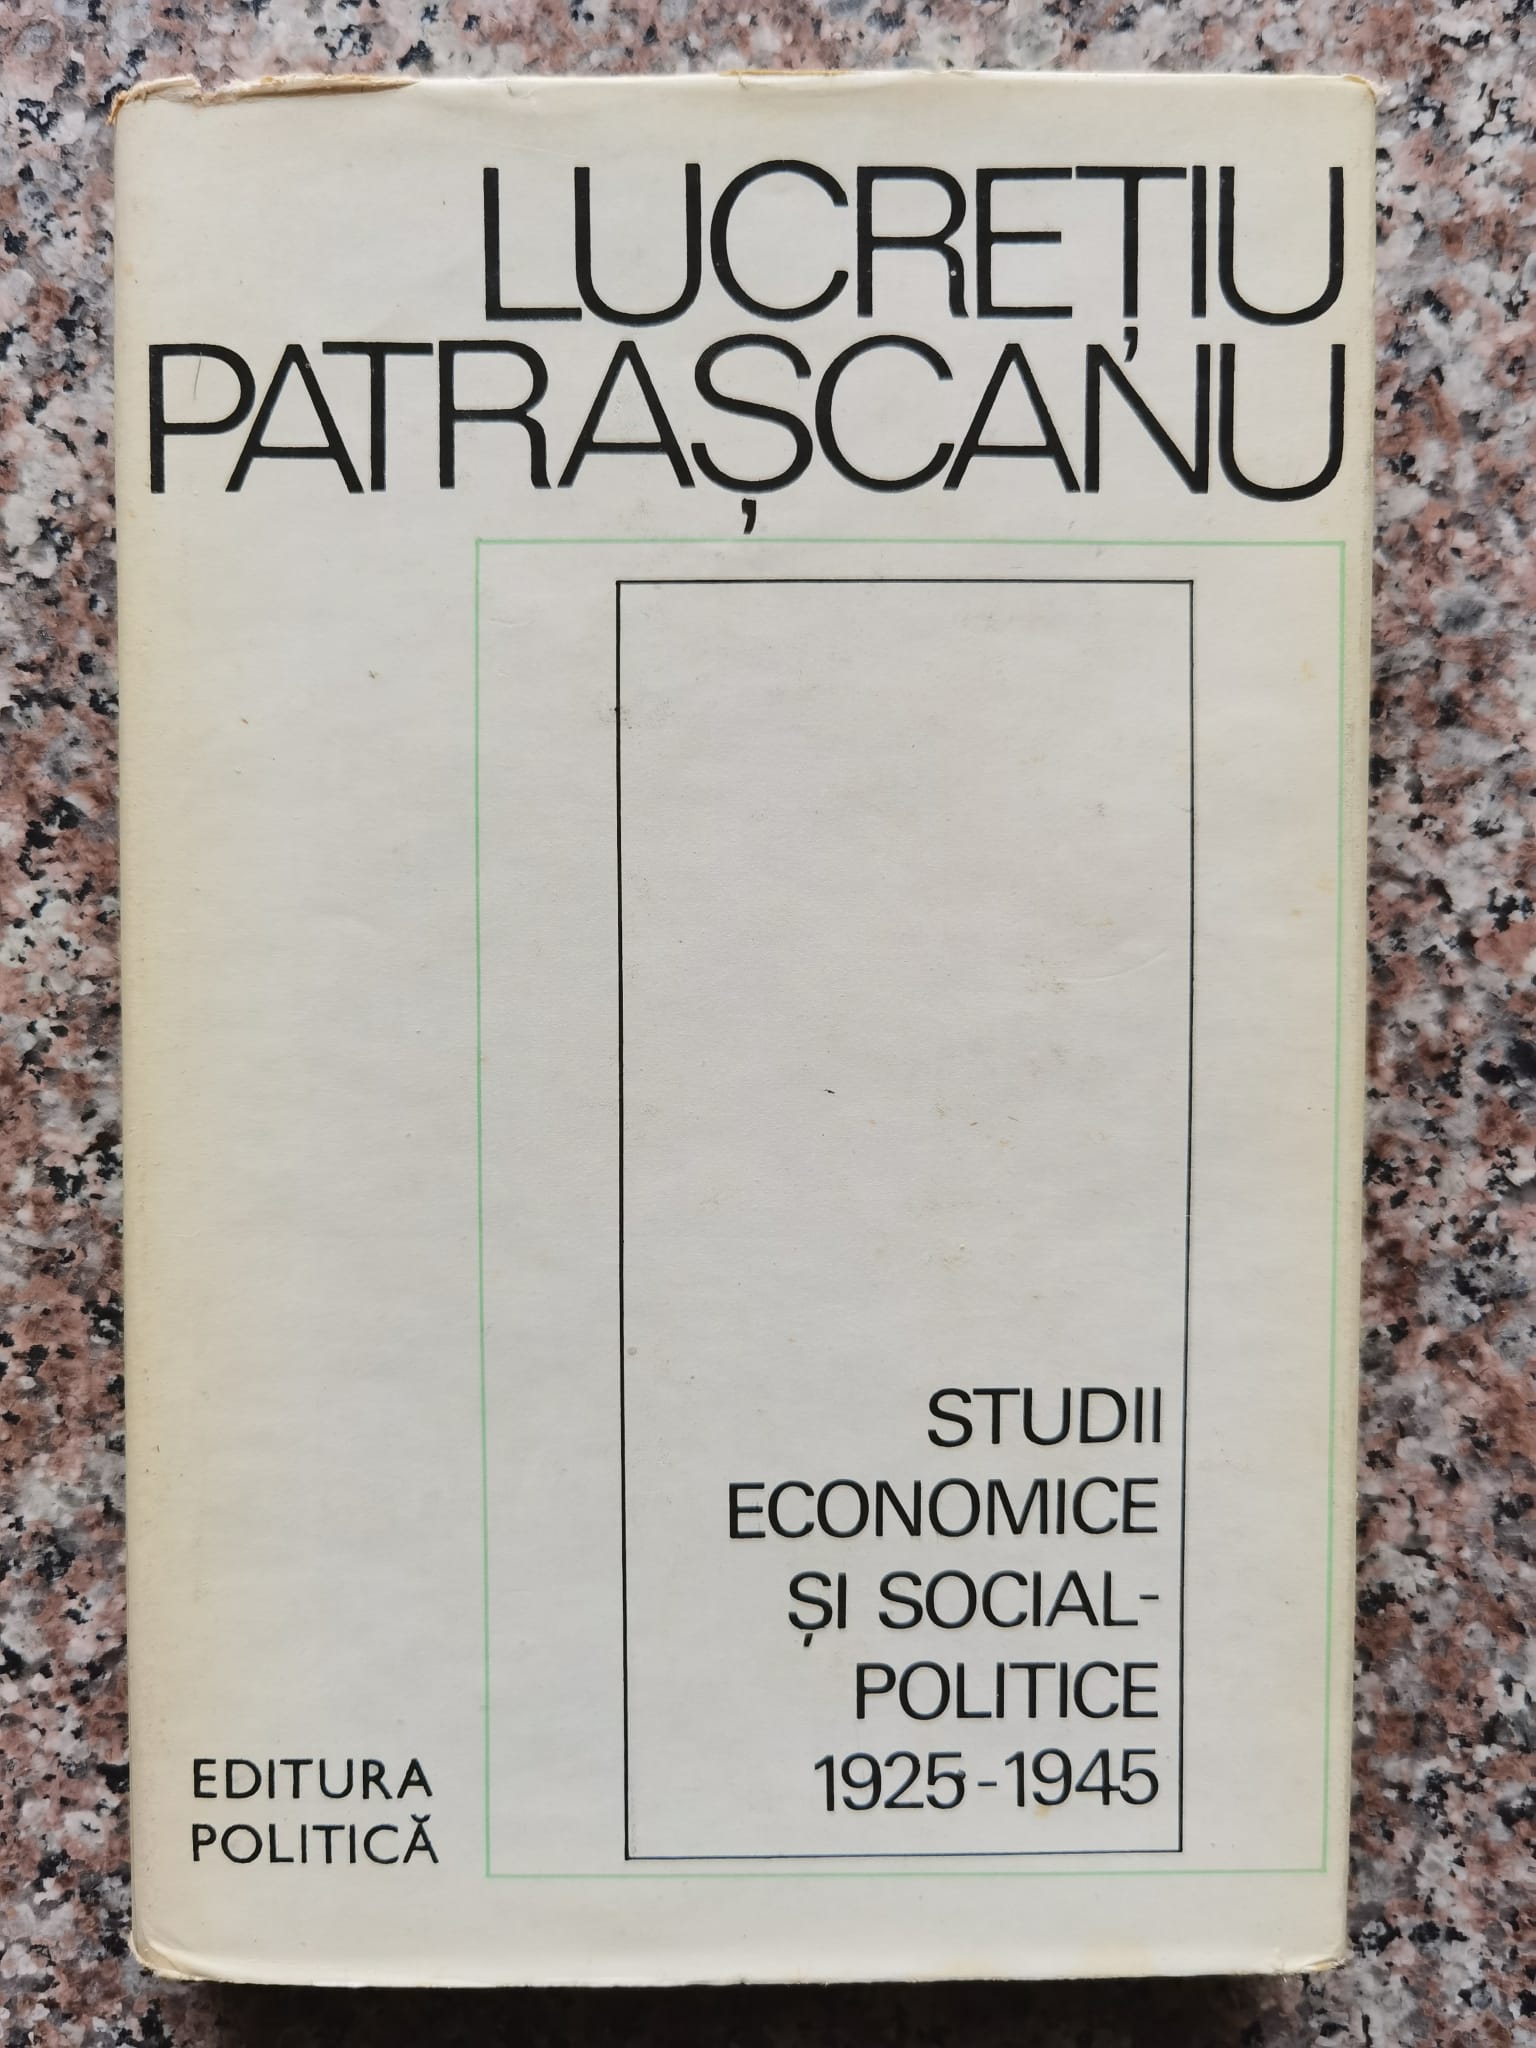 studii economice si social-politice 1925-1945                                                        lucretiu patrascanu                                                                                 